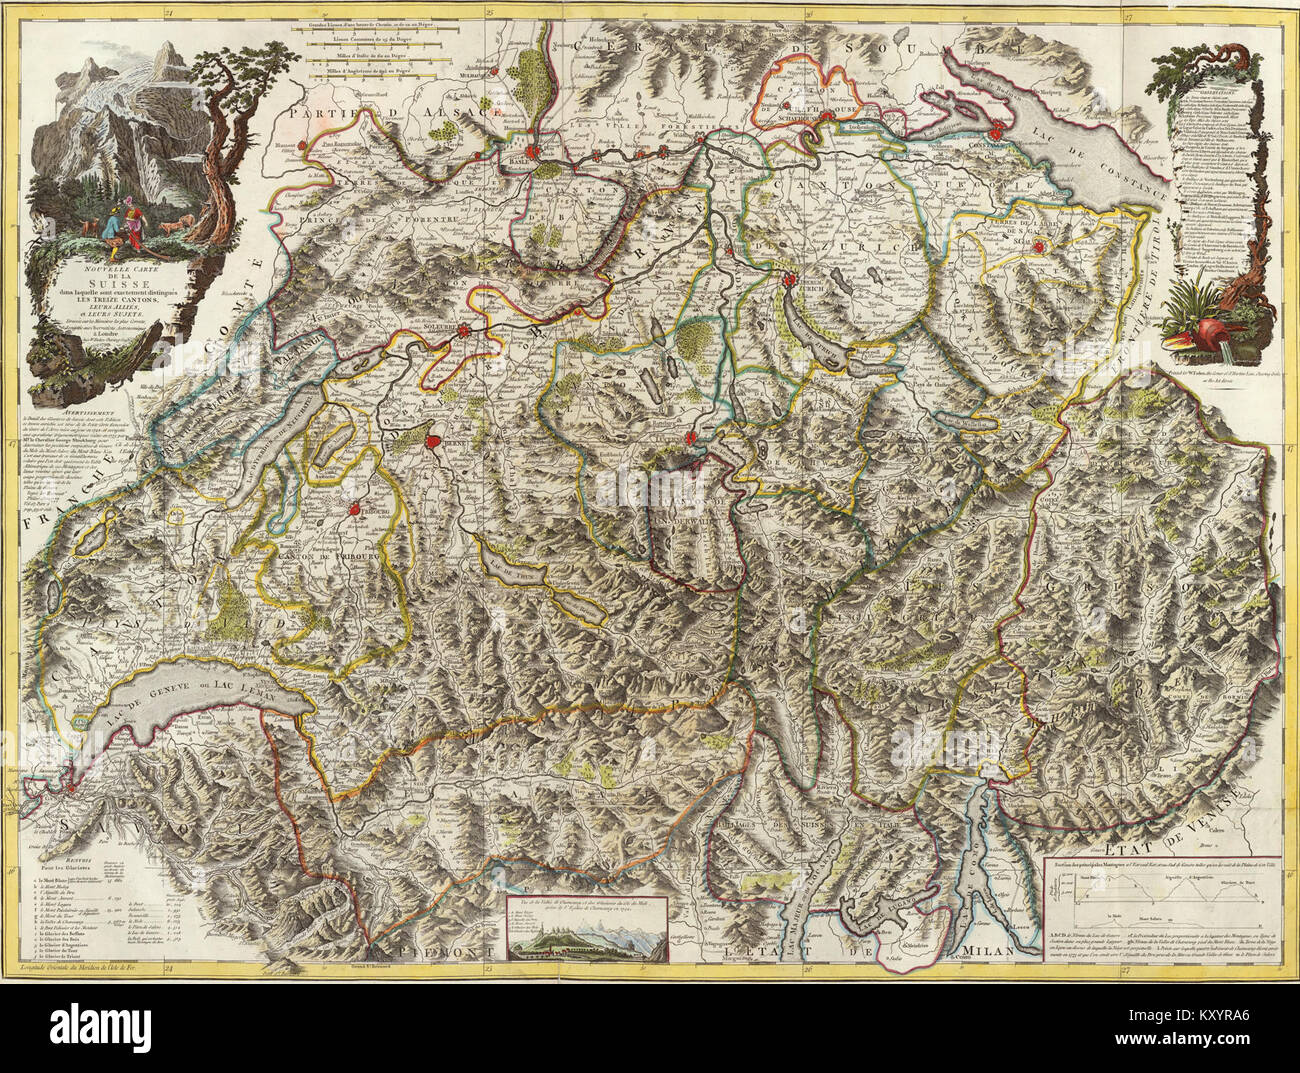 Faden, William - carte de Suisse 1799 Banque D'Images